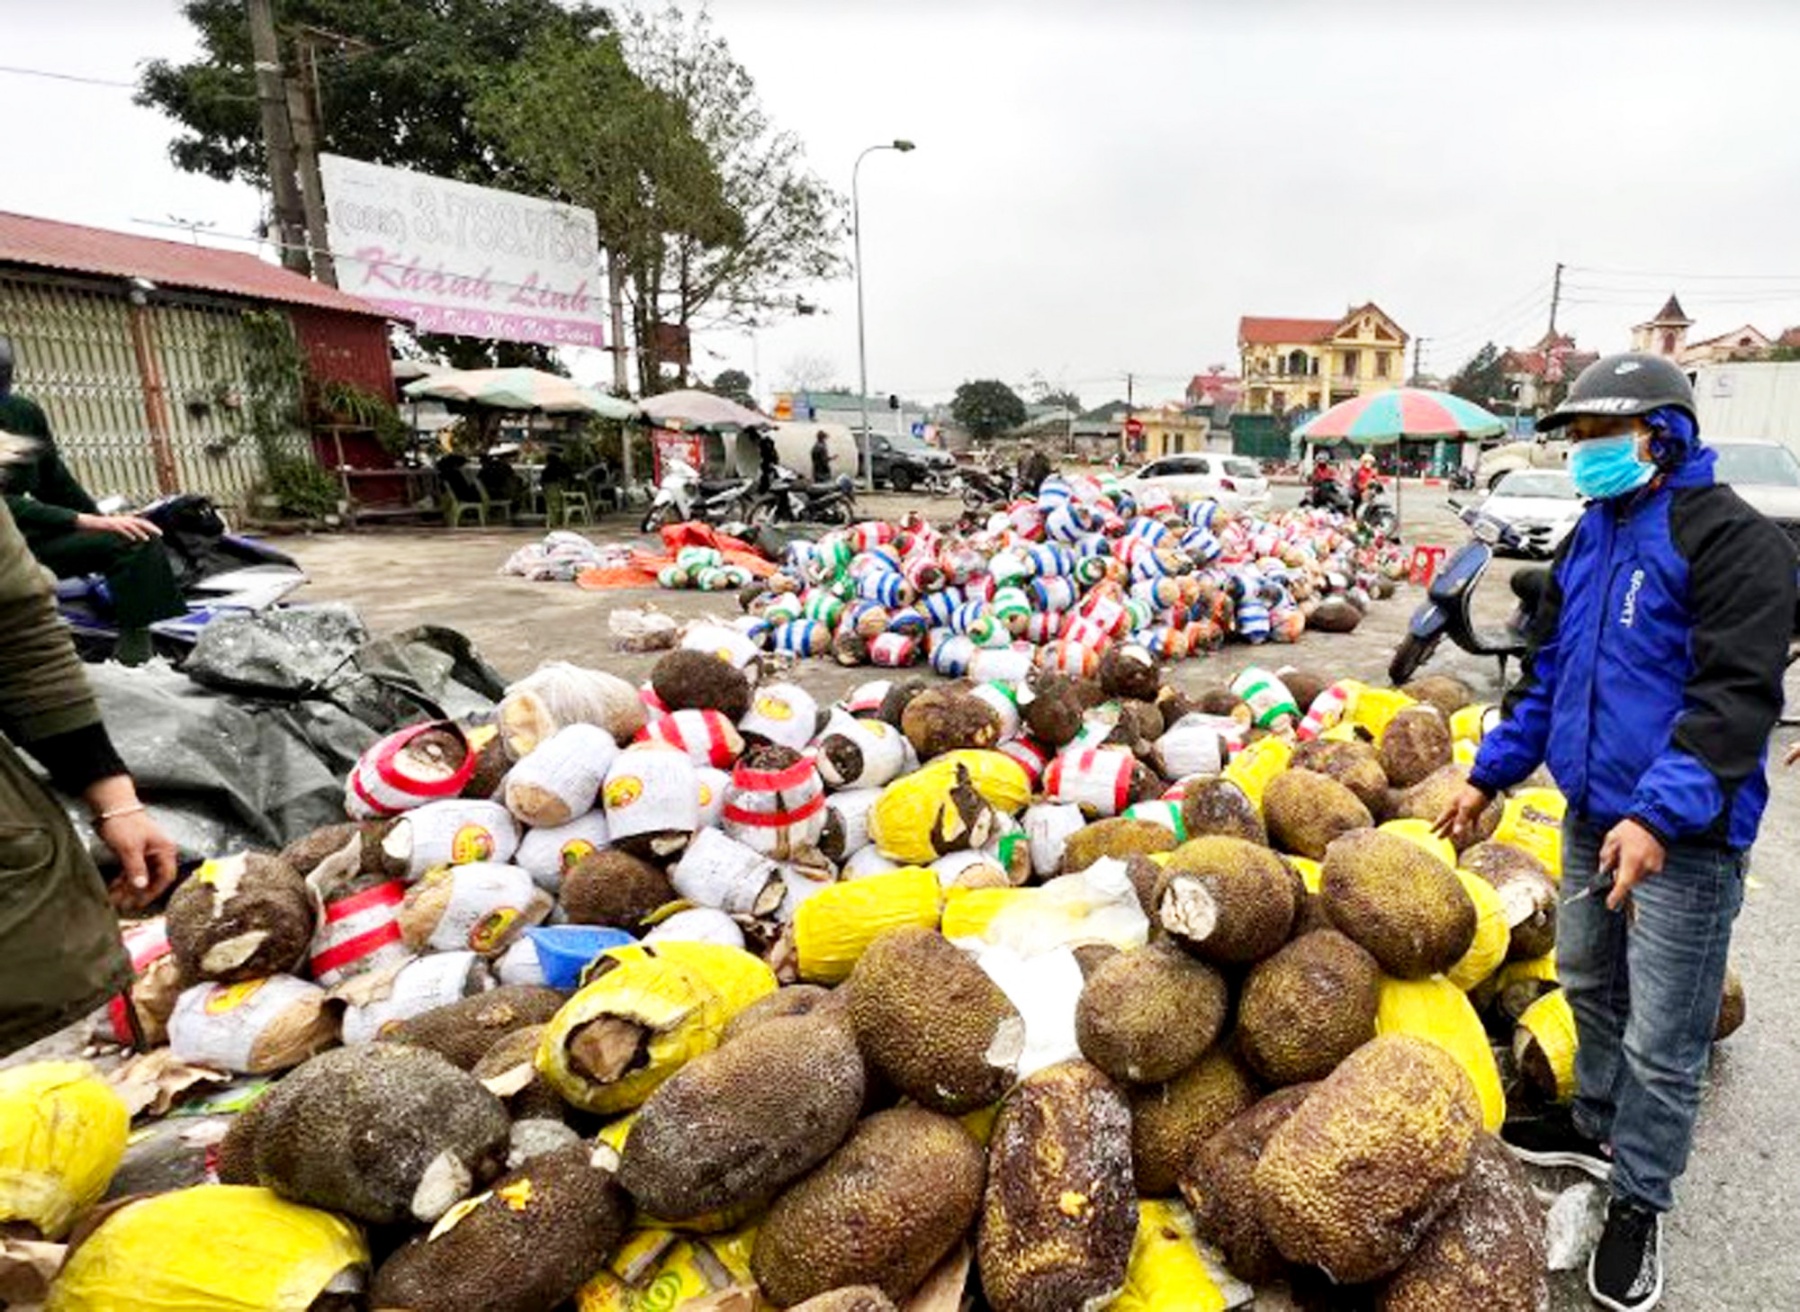 Hàng trăm tấn nông sản bị vứt bỏ cạnh cửa khẩu Hữu Nghị, tỉnh Lạng Sơn, được người dân thu gom về bán lại - ẢNH: LÊ NGUYỄN